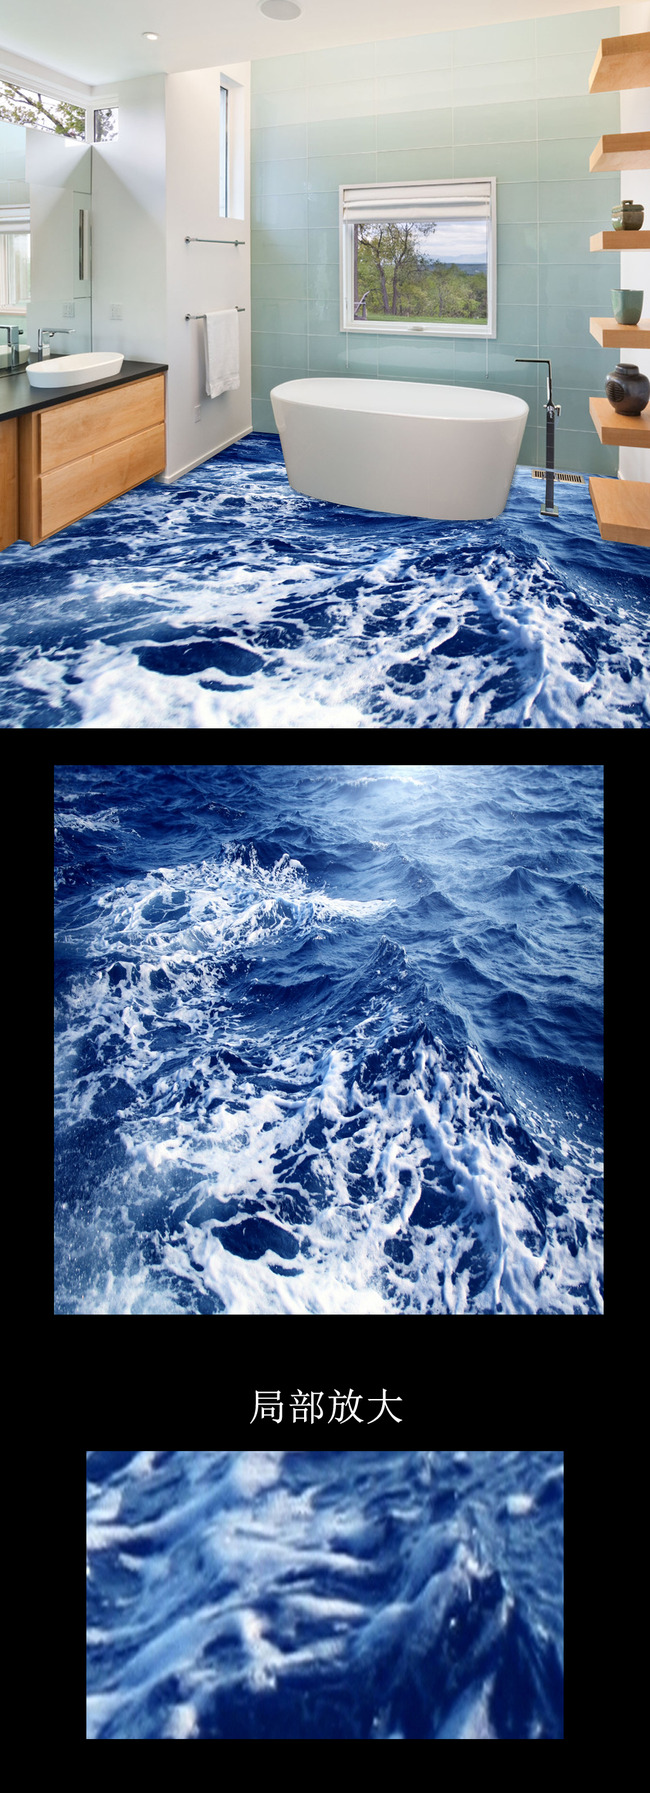 浴室地板波涛汹涌的海面高清图片下载(图片编号13611186)海洋世界地板图片_3D地板图片_我图网weili.ooopic.com